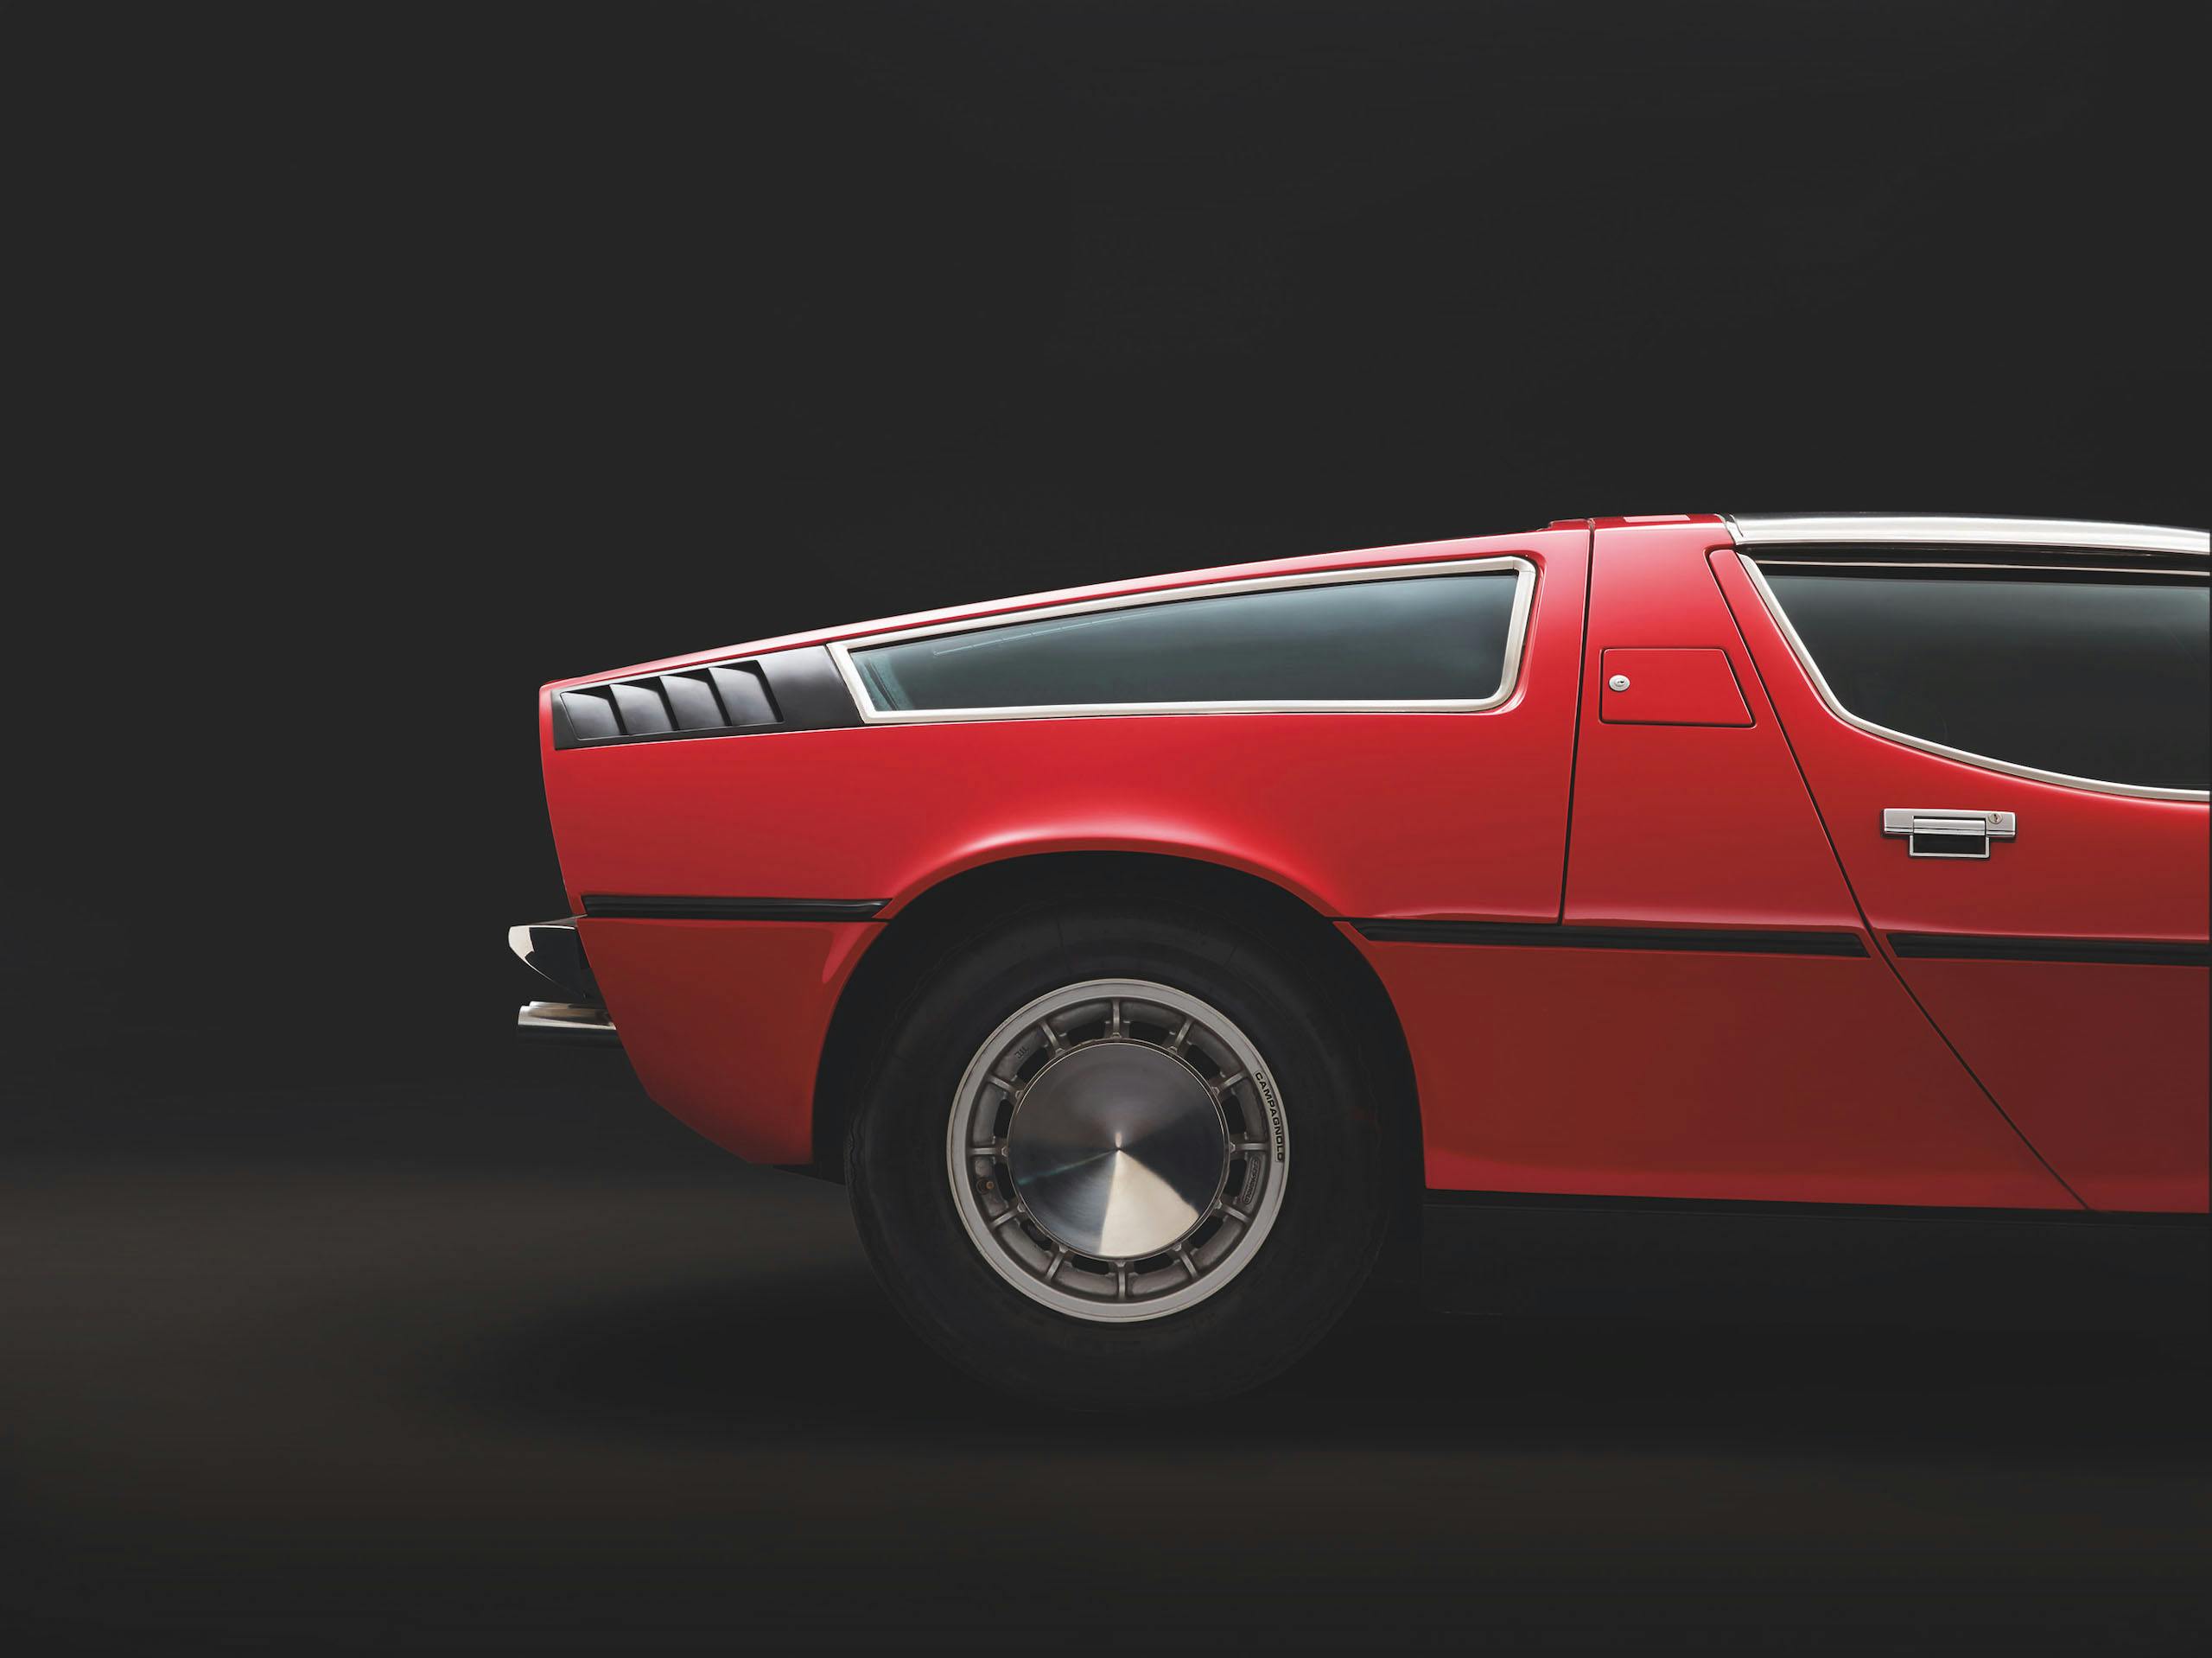 Maserati Bora rear side profile fascia